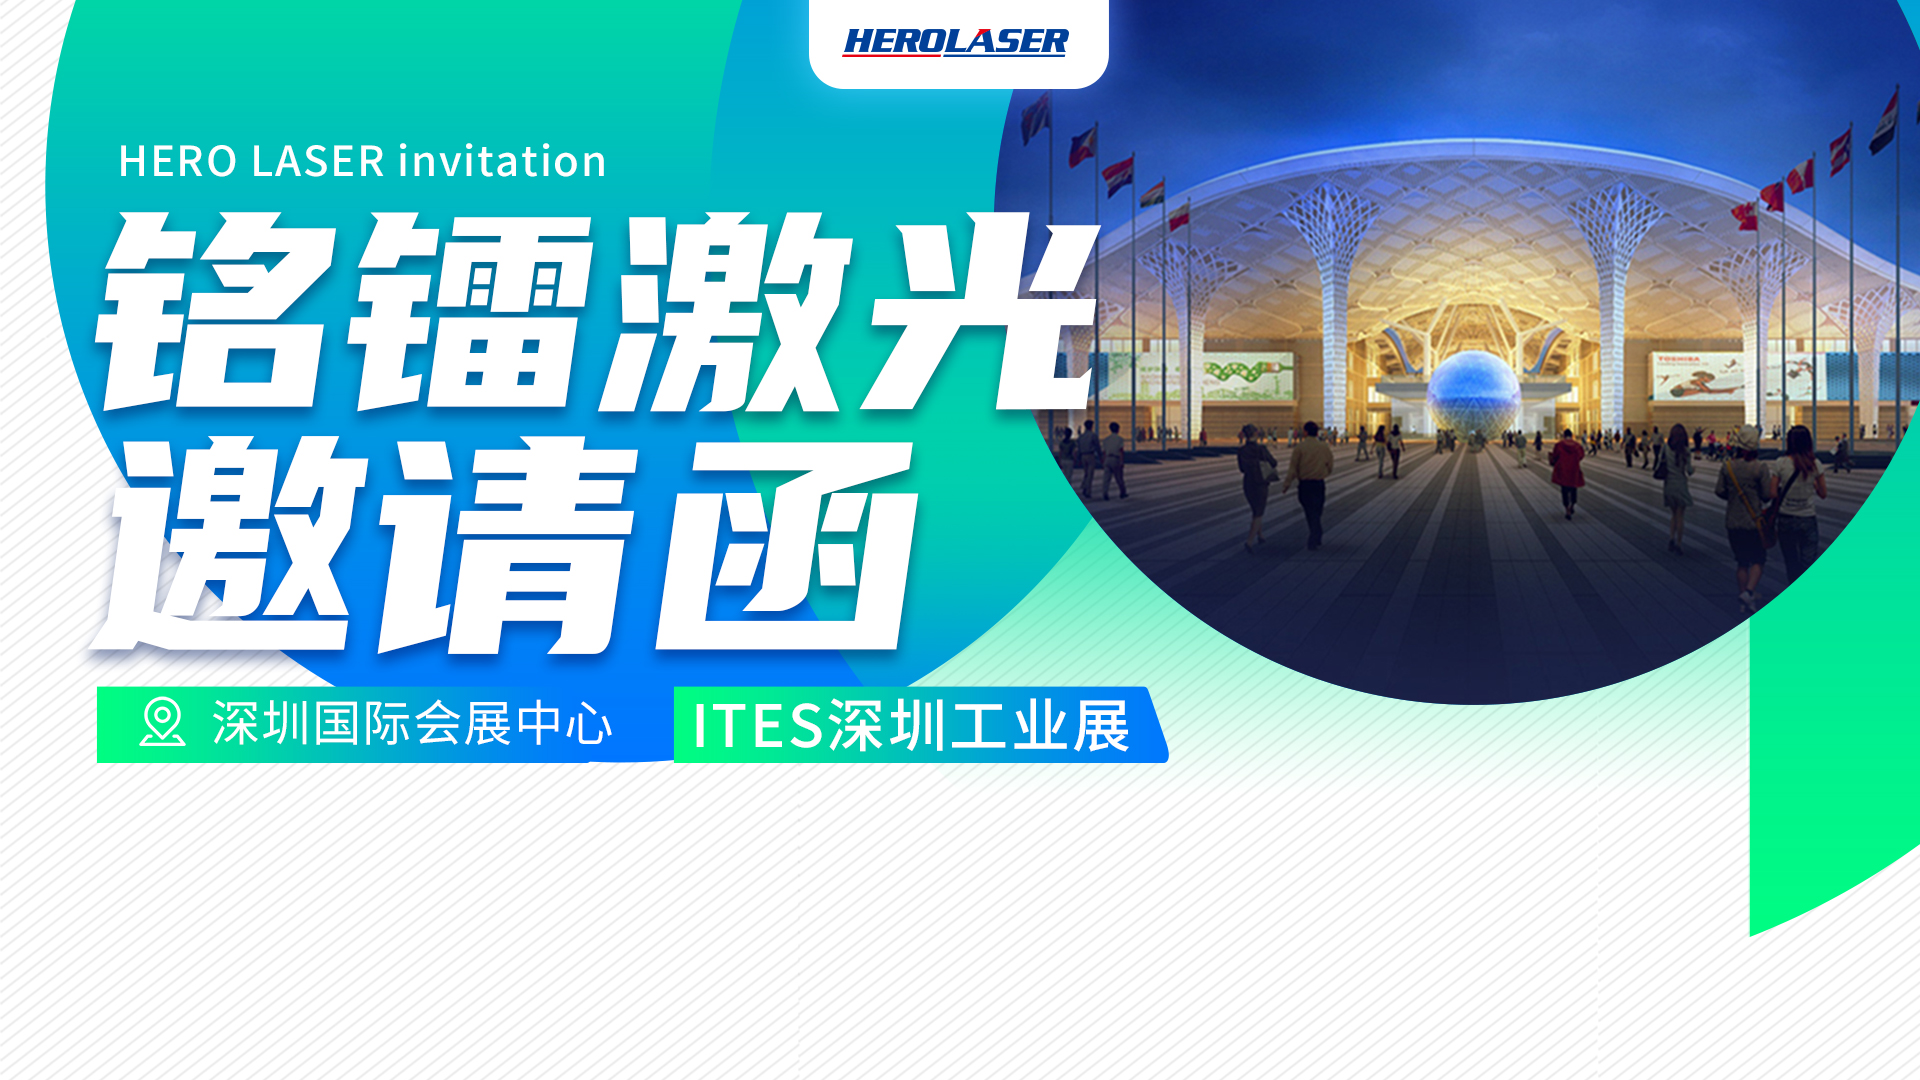 和记娱乐官网诚邀您参加 3月29日-4月1日 ITES深圳工业展